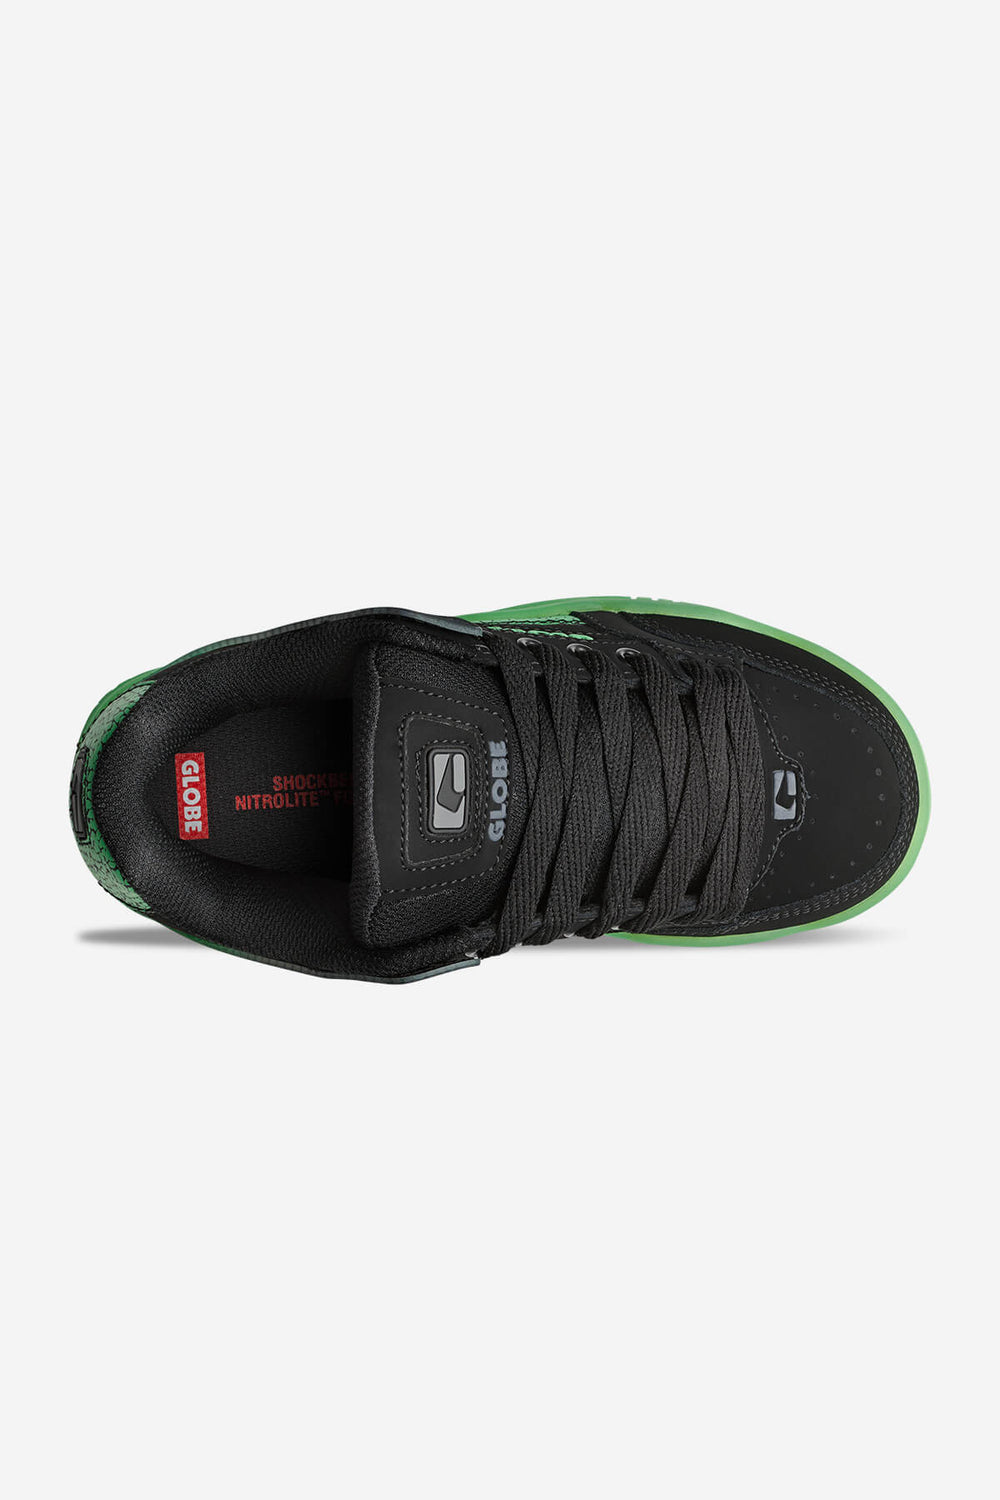 Tilt Kids Black/Green Skateboarding Shoes Black/Green Stipple 